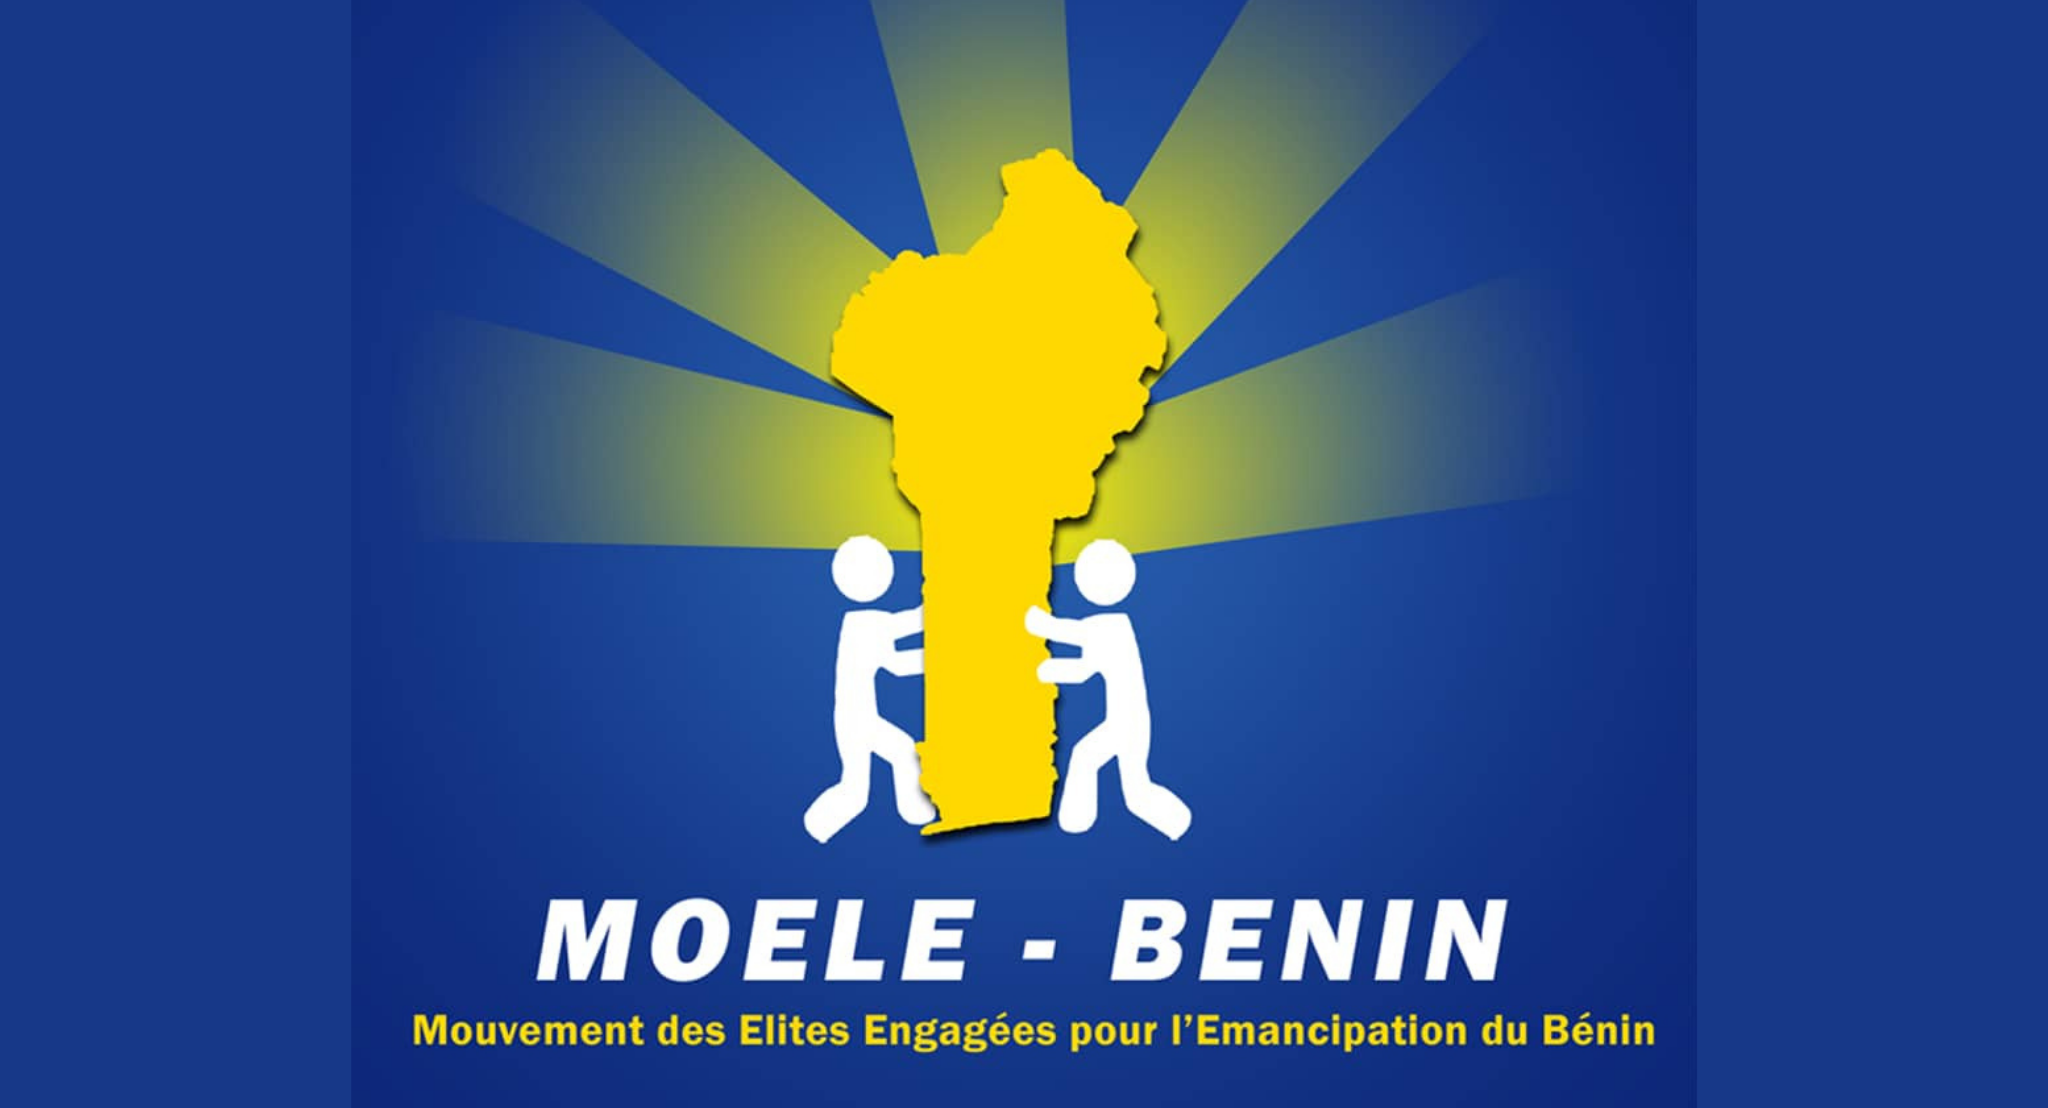 Législatives 2023 au Bénin : voici l’identité des candidats positionnés par circonscription électorale sur la liste Moele-Benin